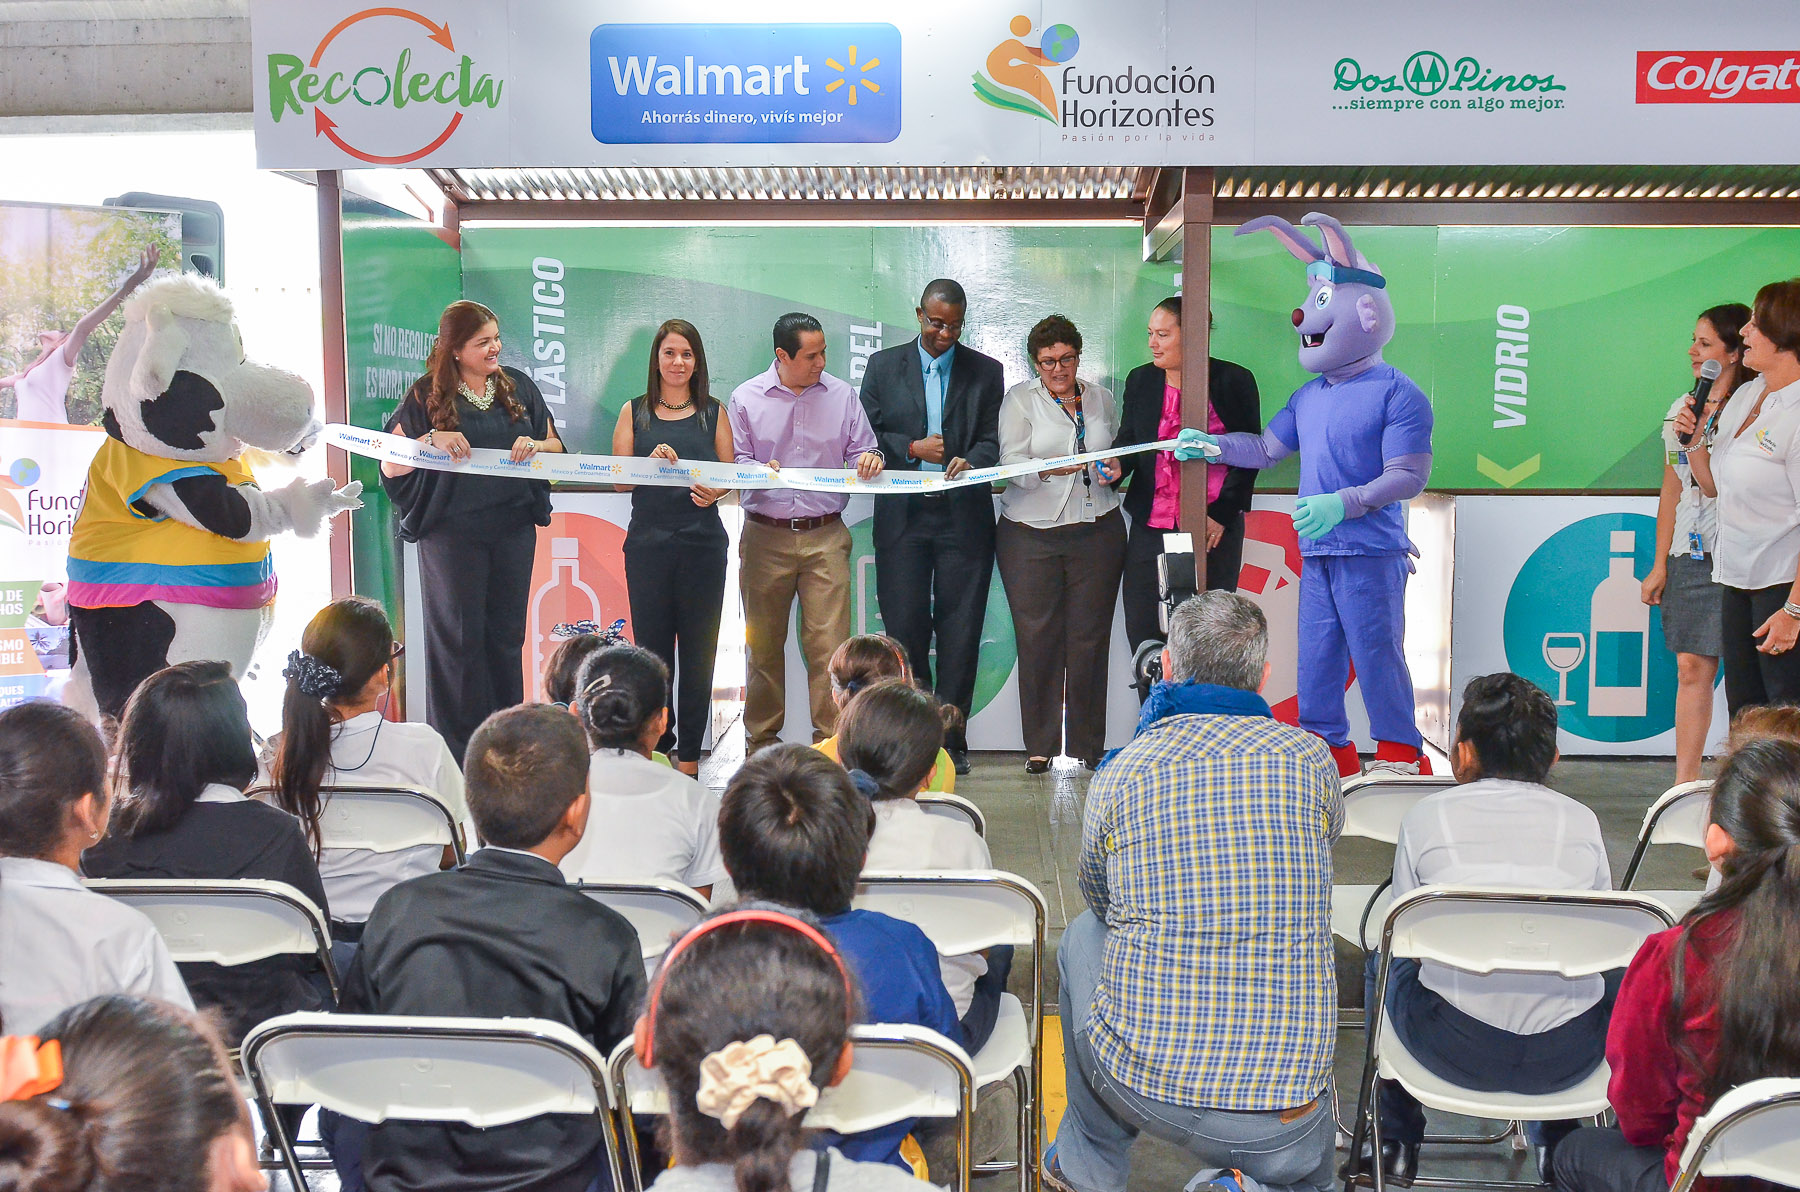 Nuevos centros “Recolecta” de Walmart facilitan reciclaje a clientas